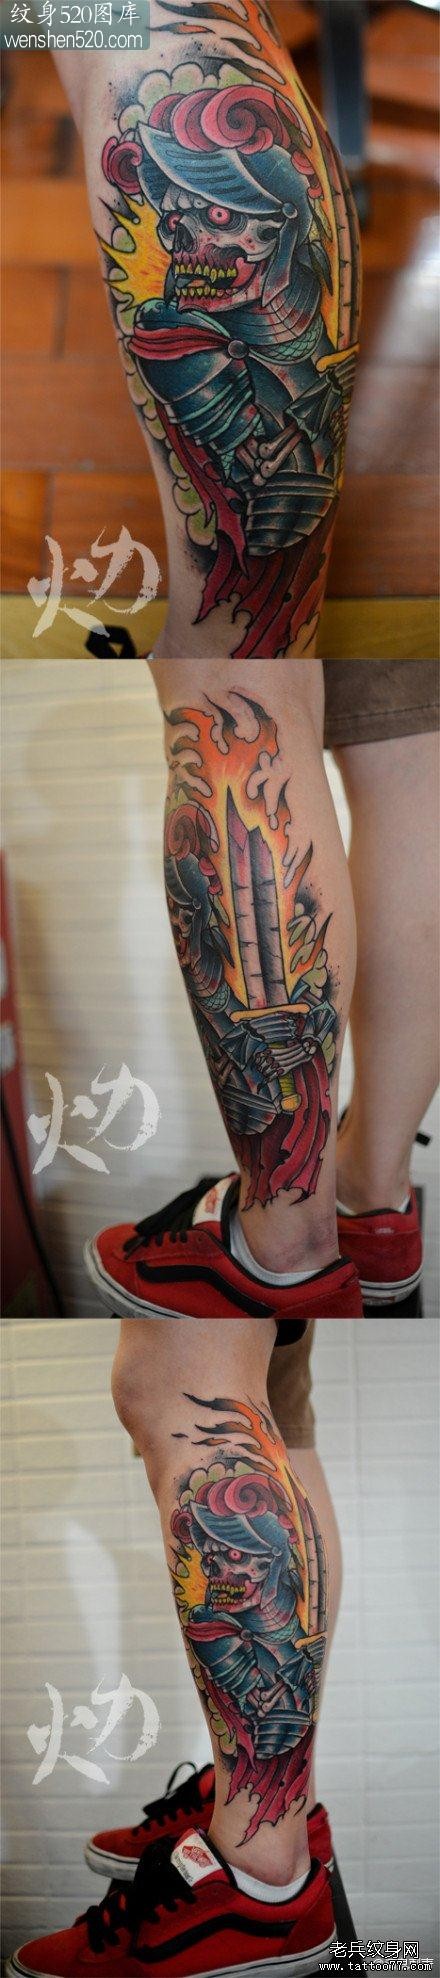 男人腿部经典潮流的骷髅骑士纹身图案